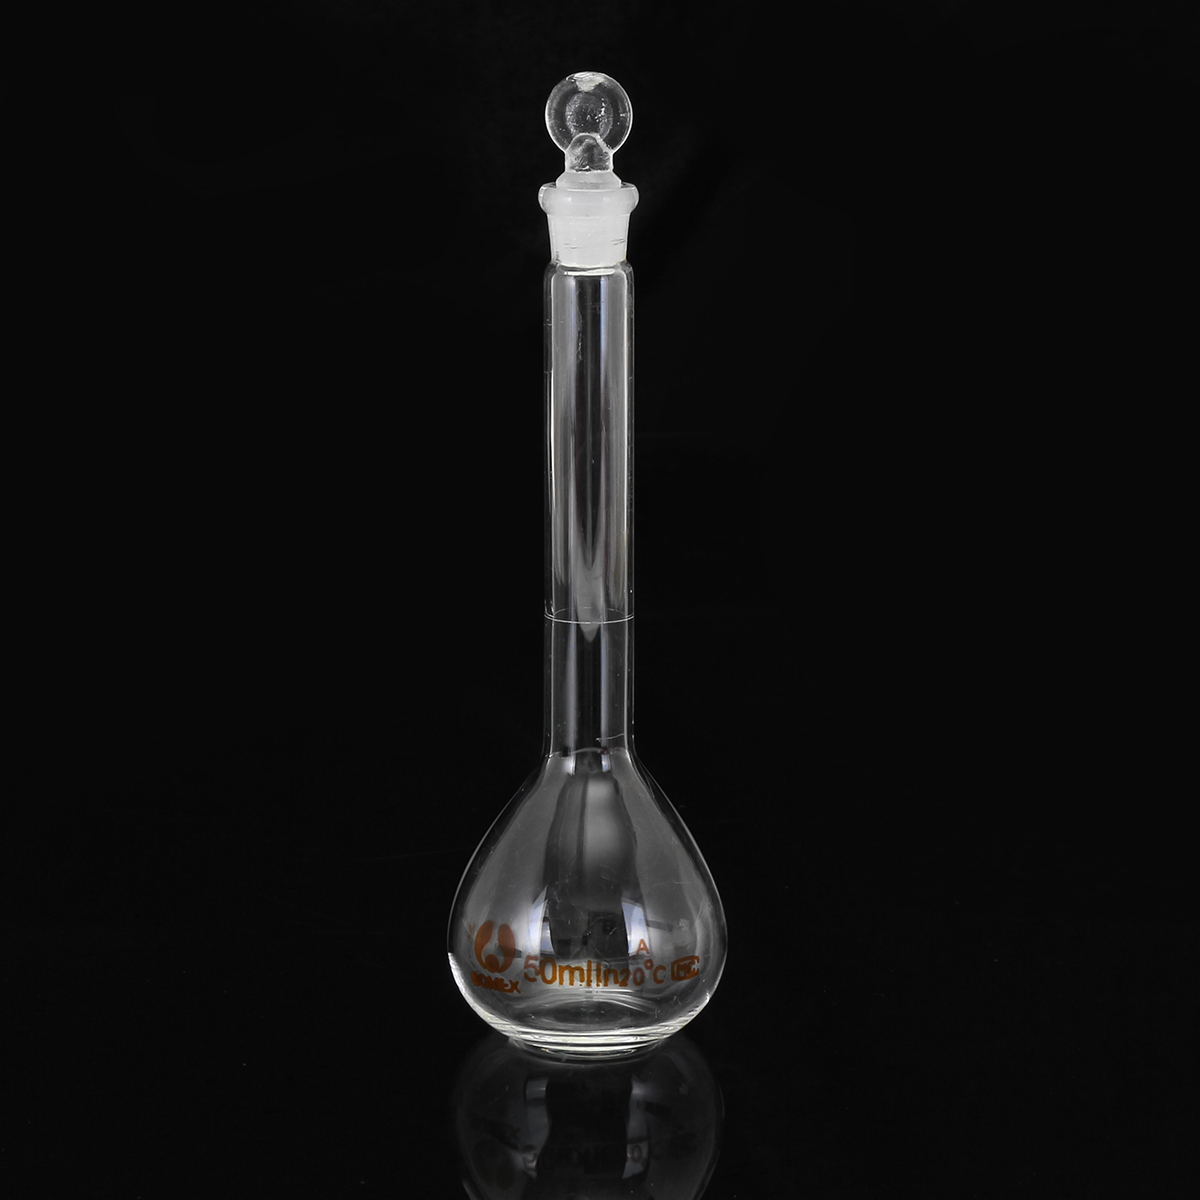 50mL-Clear-Glass-Volumetric-Flask-w-Glass-Stopper-Lab-Chemistry-Glassware-1356426-1